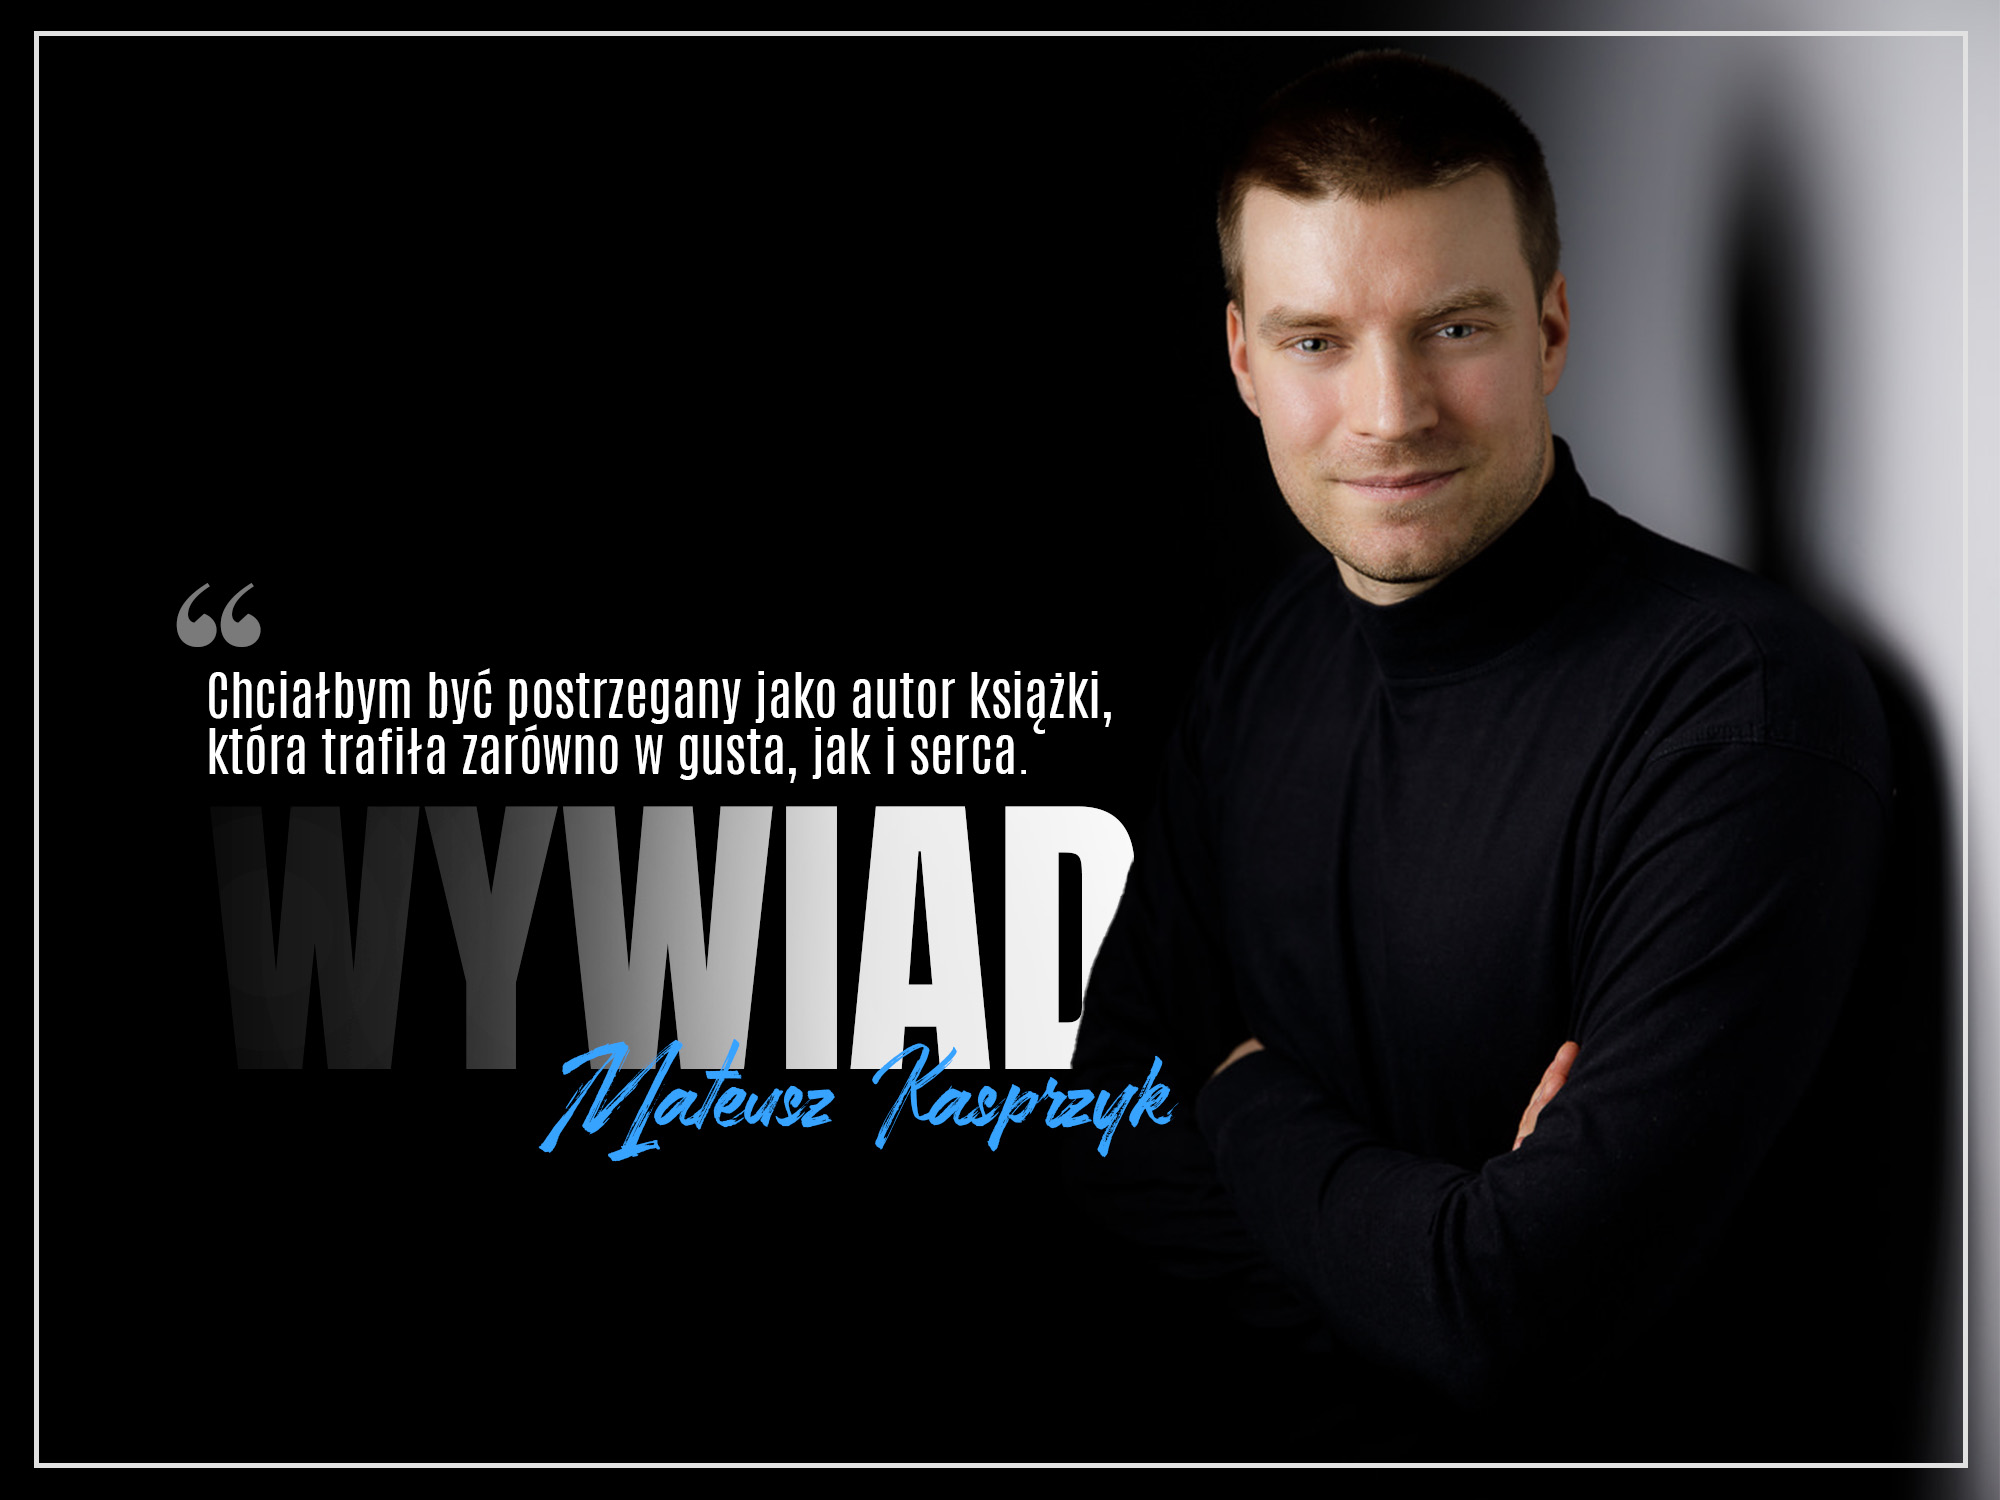 Wywiad - Mateusz Kasprzyk - Zaczytanyksiazkoholik.pl